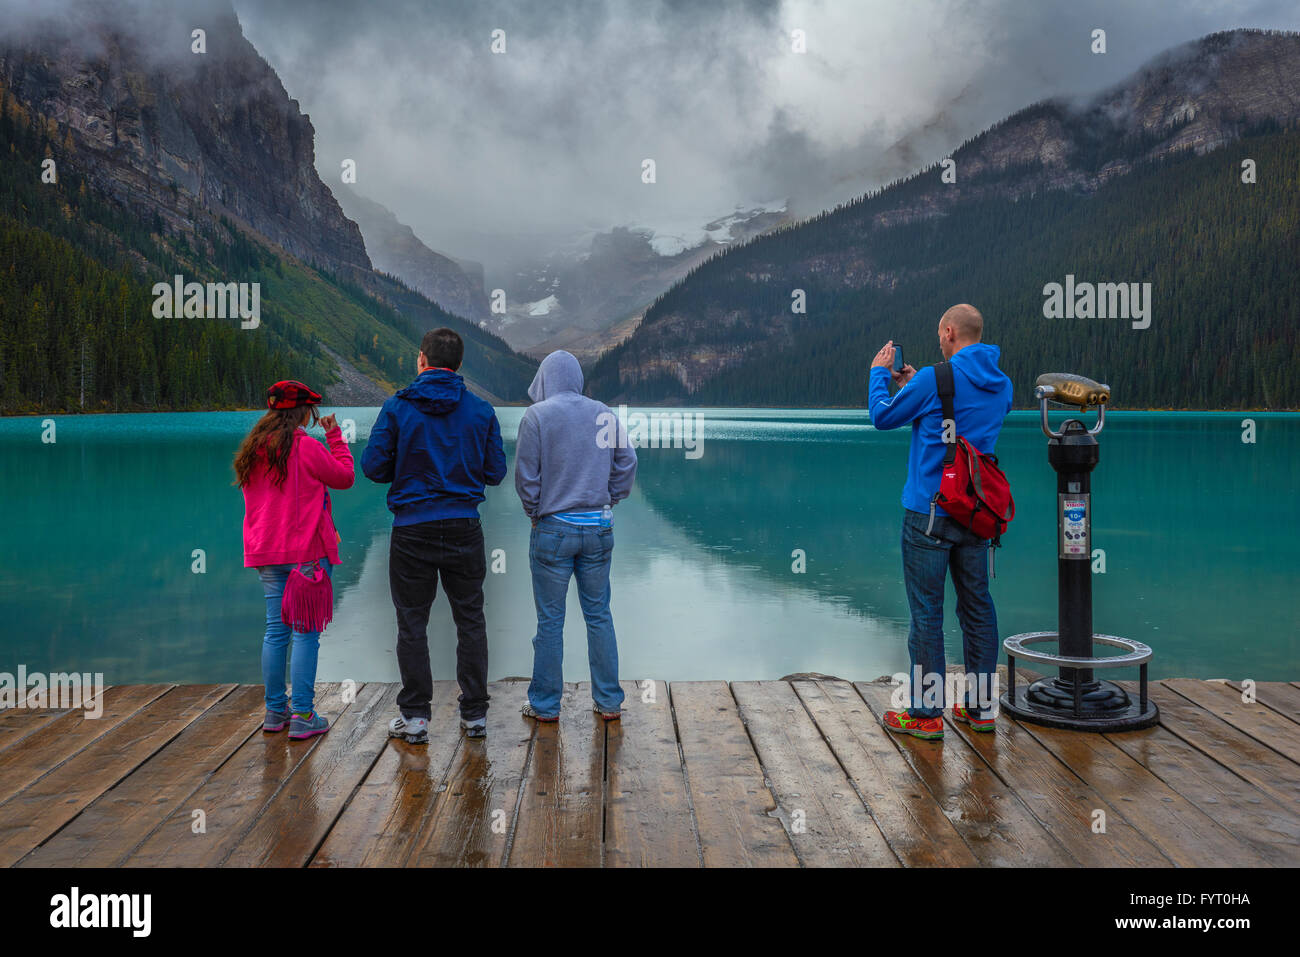 Gruppo di turisti a guardare e scattare le foto di Lake Louise a Banff nationalpark canada durante una piovosa daylake louise Foto Stock